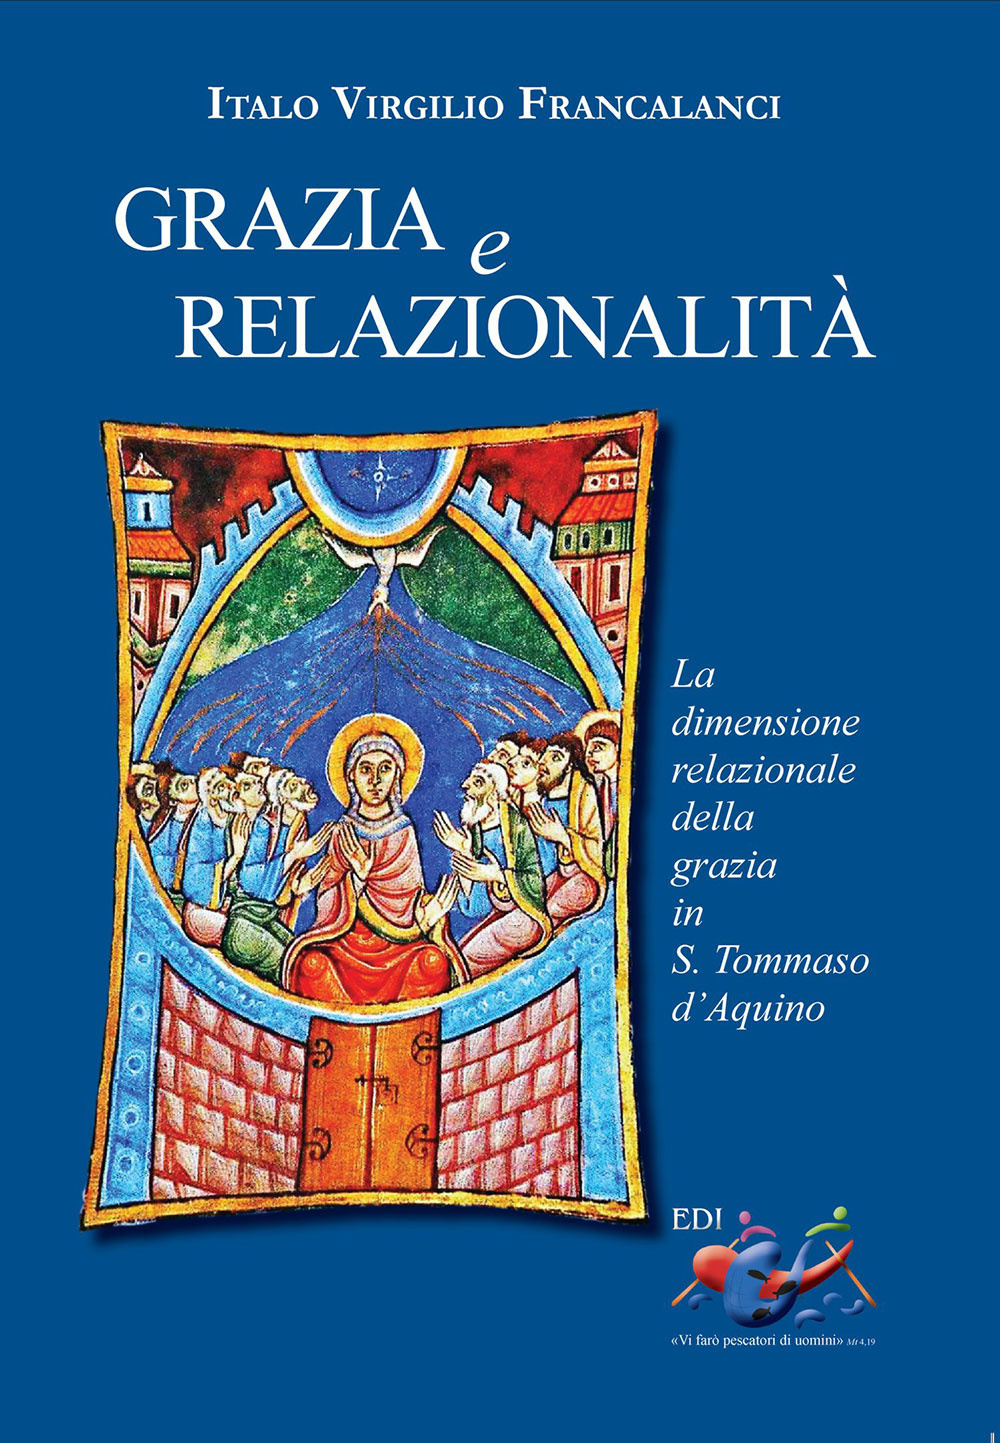 Image of Grazia e relazionalità. La dimensione relazionale della grazia in s. Tommaso d'Aquino